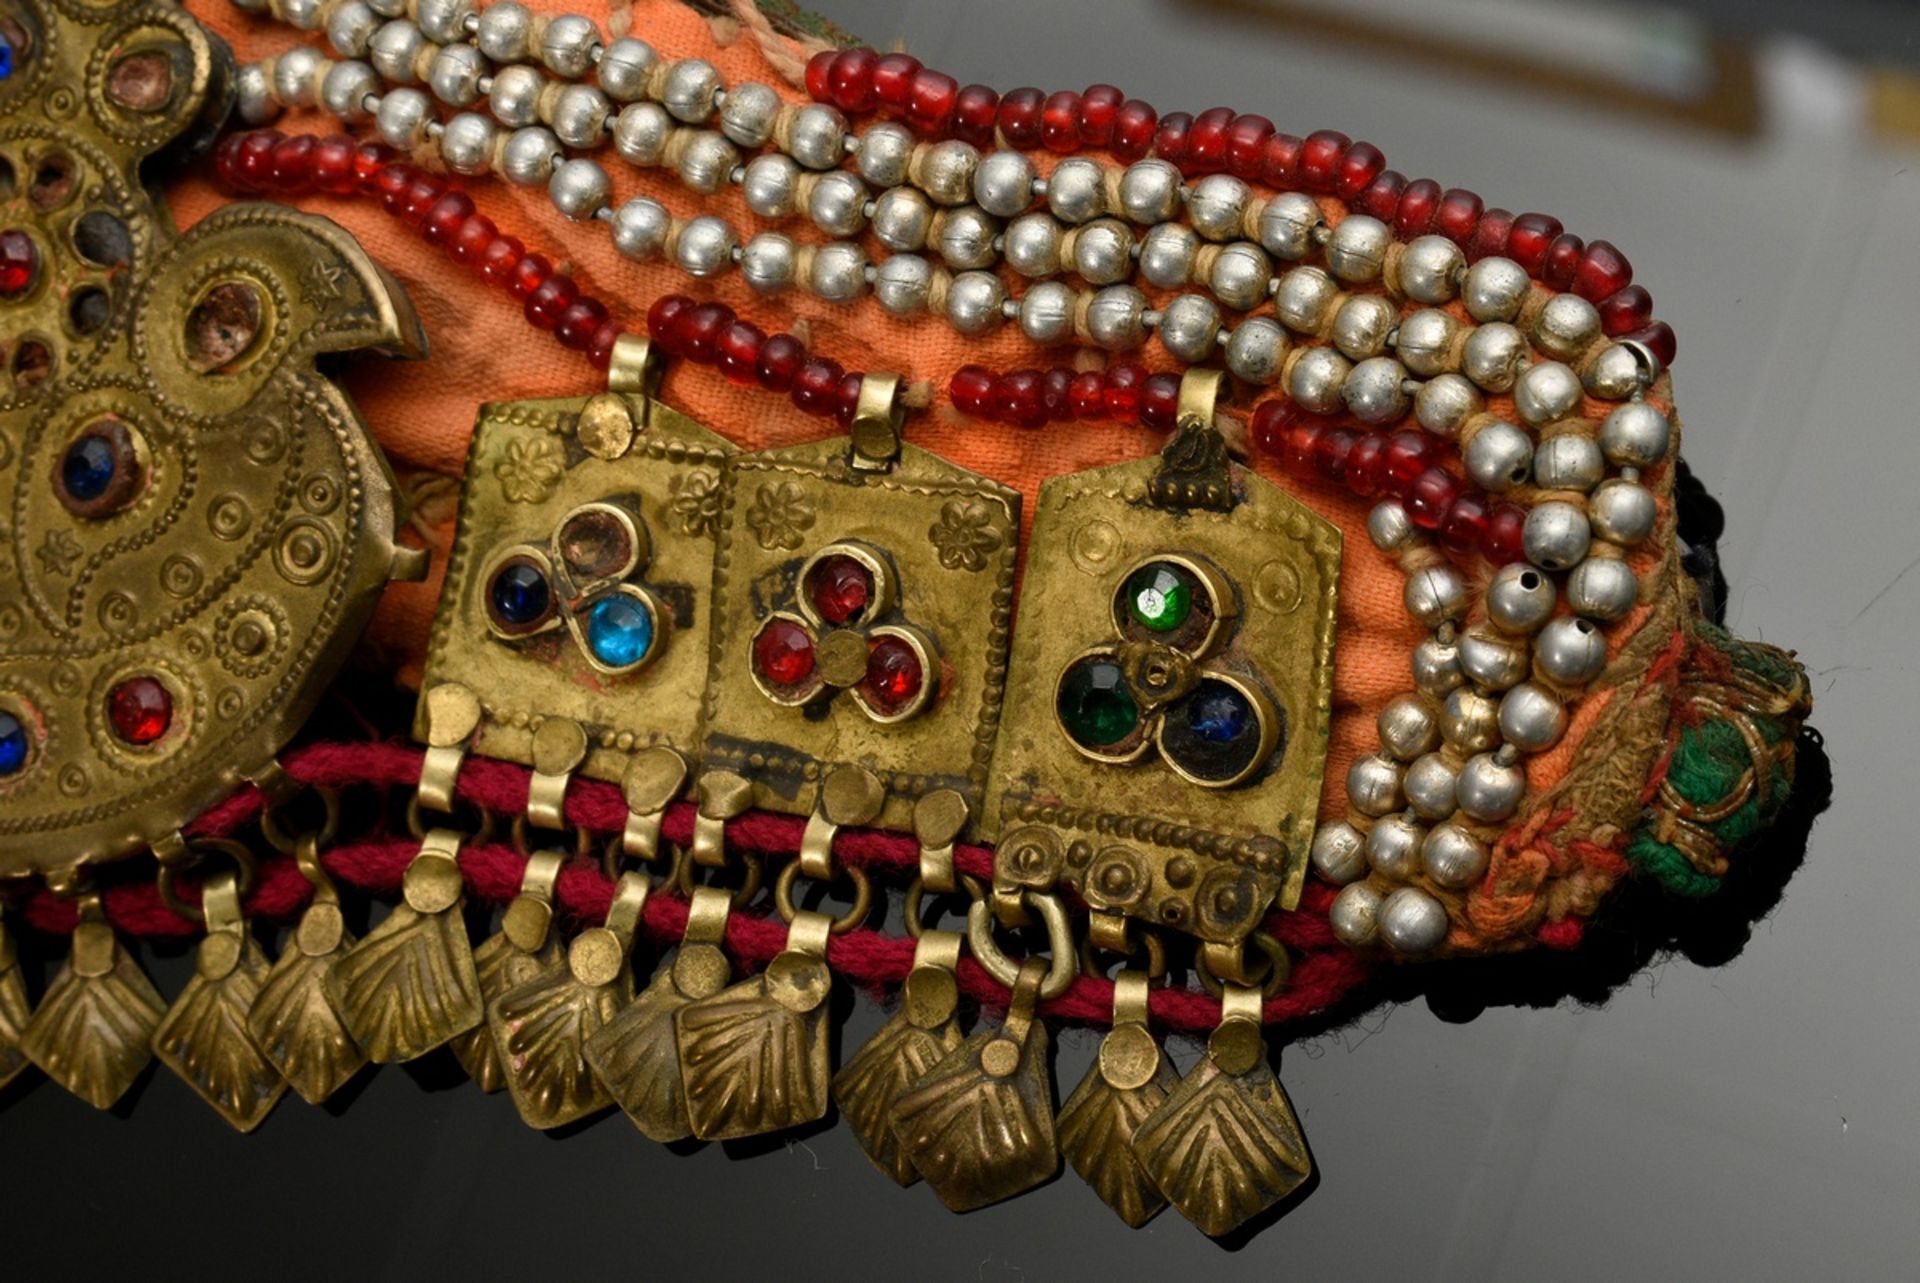 2 Diverse Teile afghanischer Choker und Stirnschmuck mit Glassteinen, Plättchen und Perlen auf Stof - Bild 5 aus 8